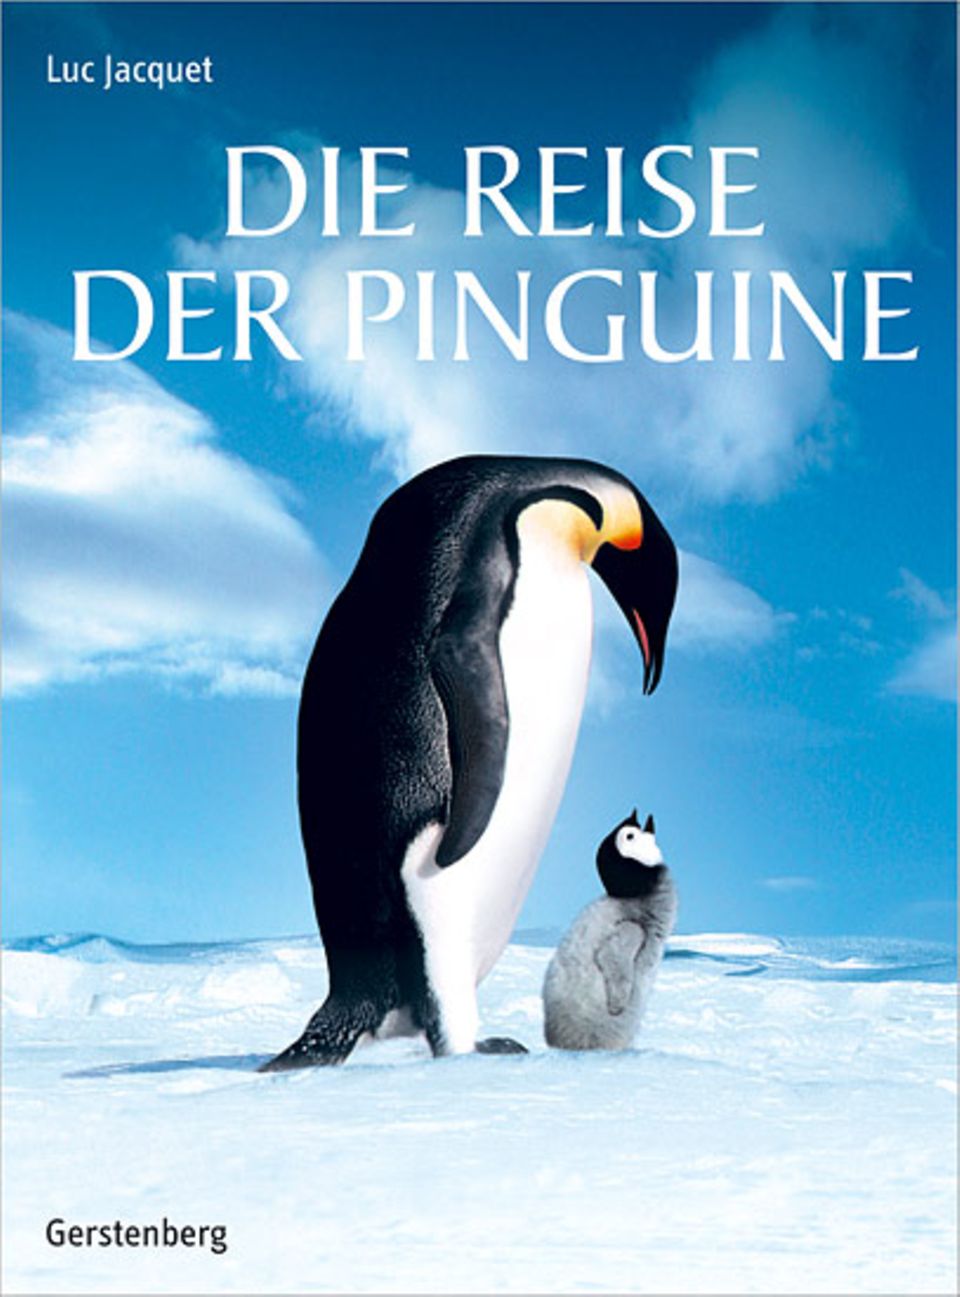 "Die Reise der Pinguine"